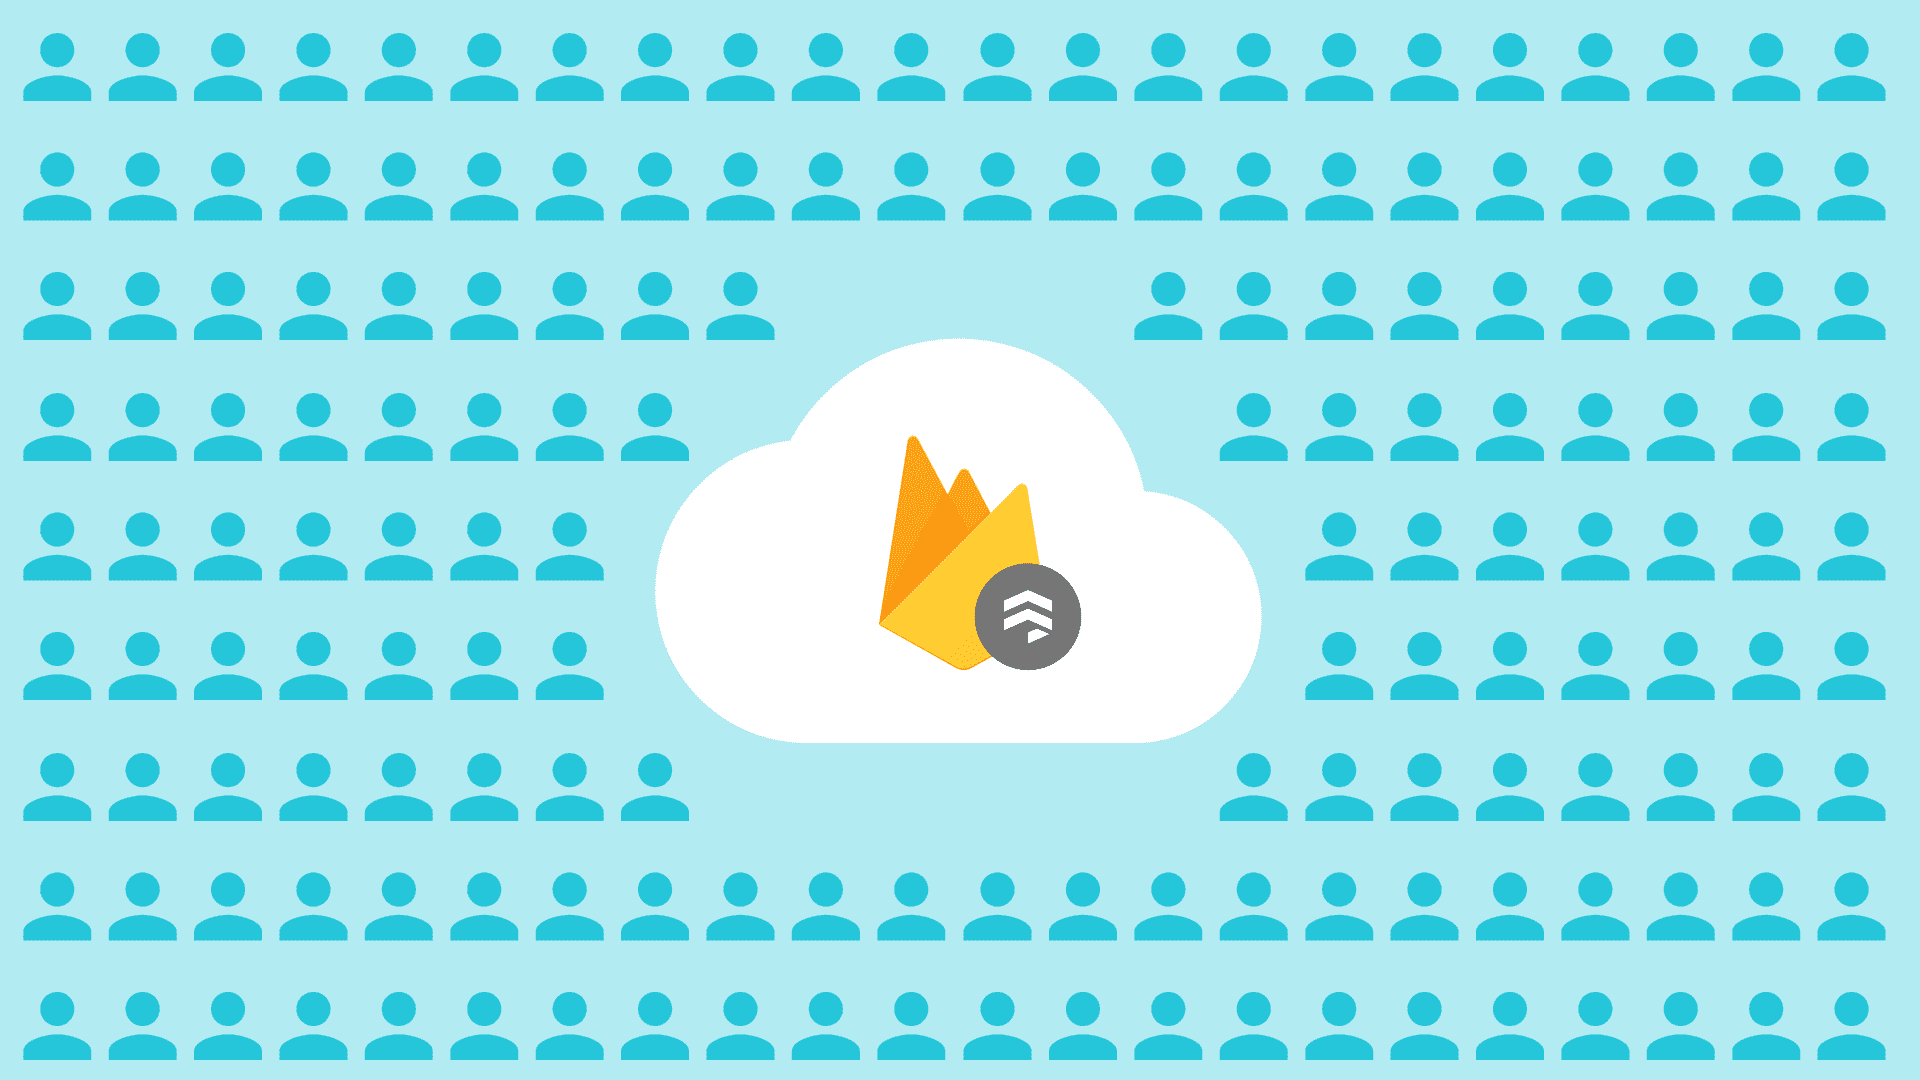 Firebase Firestore 로고 및 잠재고객을 표현한 그림